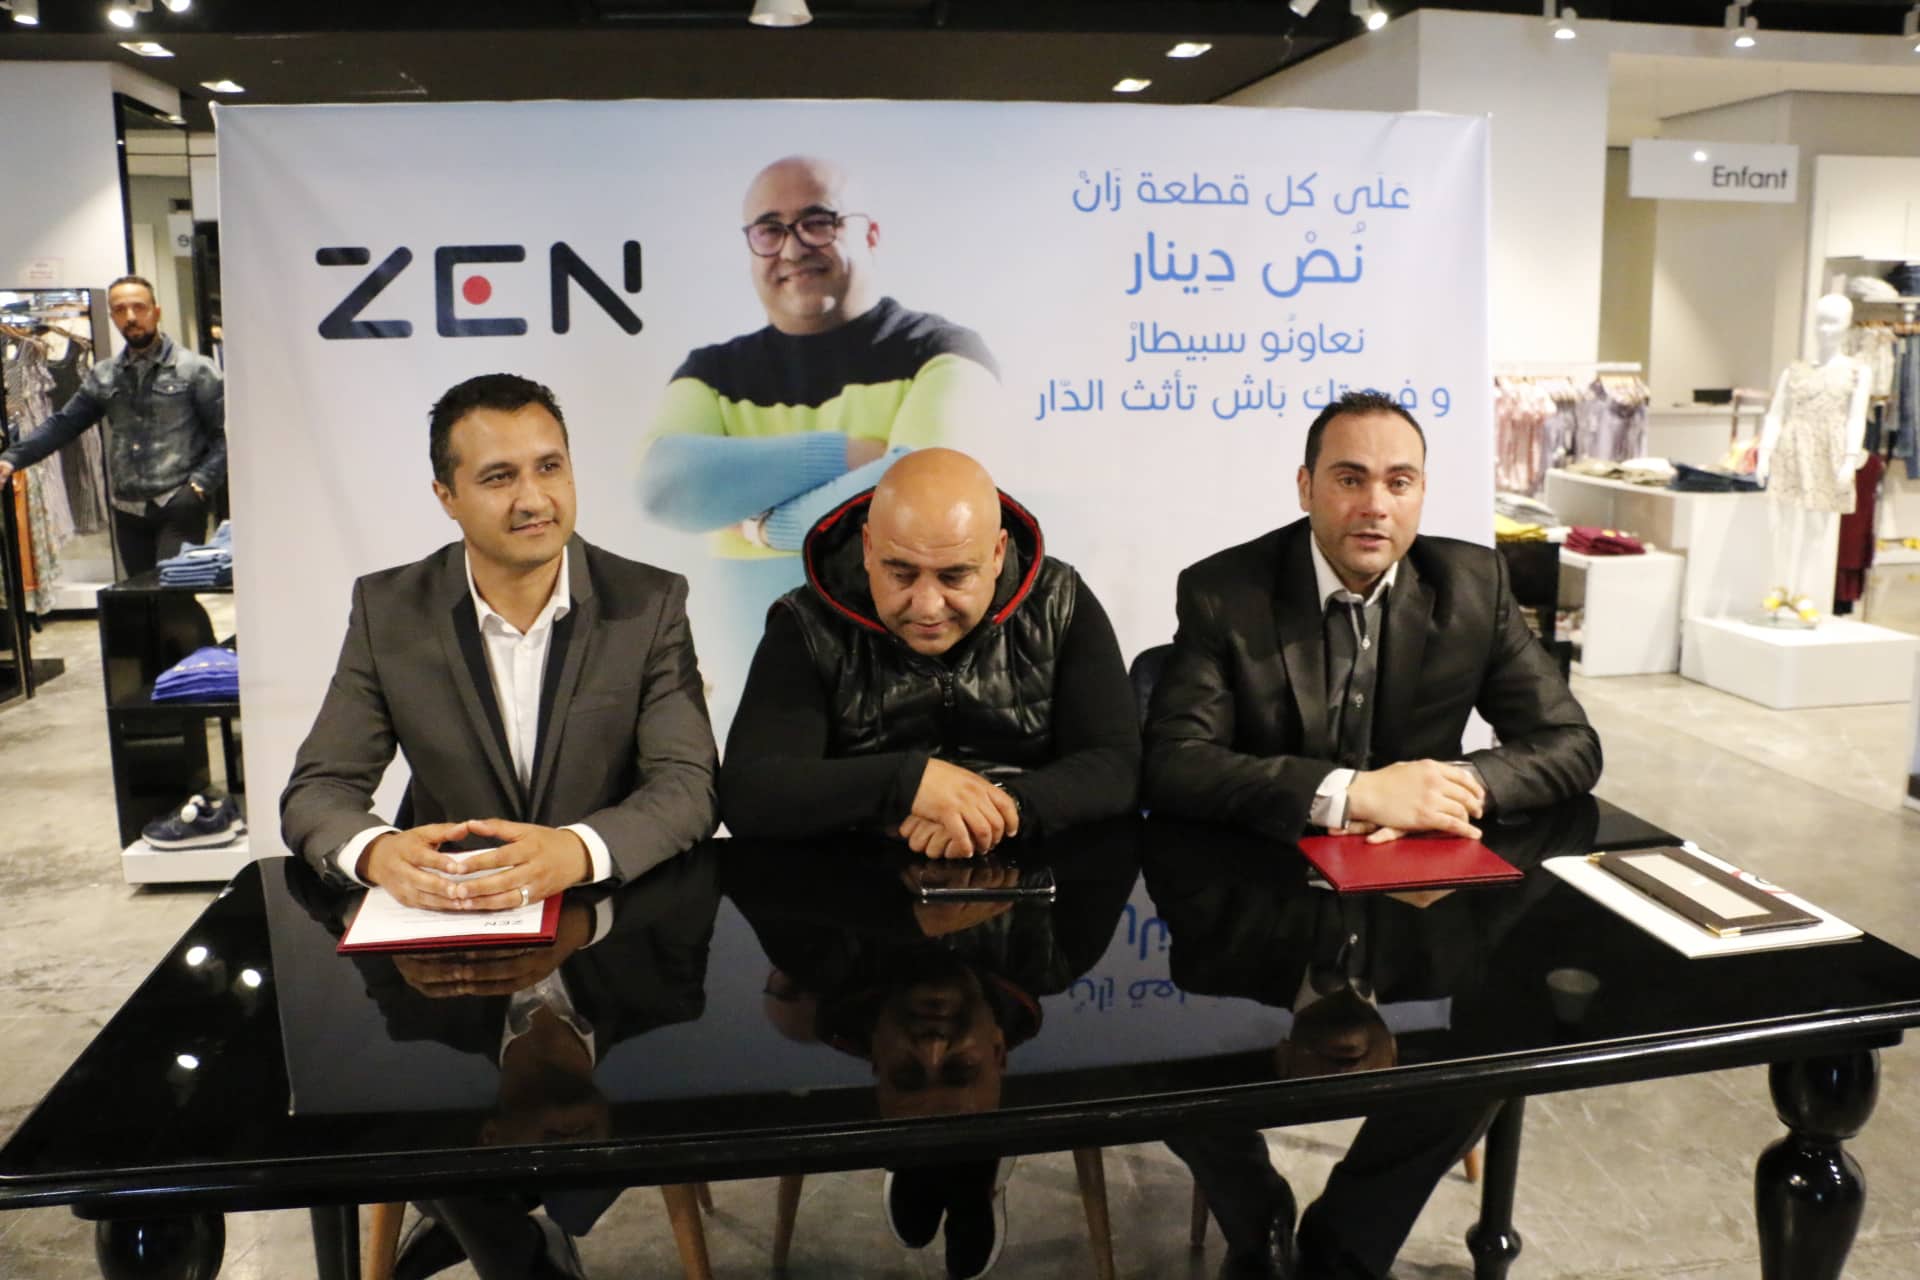 La marque ZEN lance son action sociale 